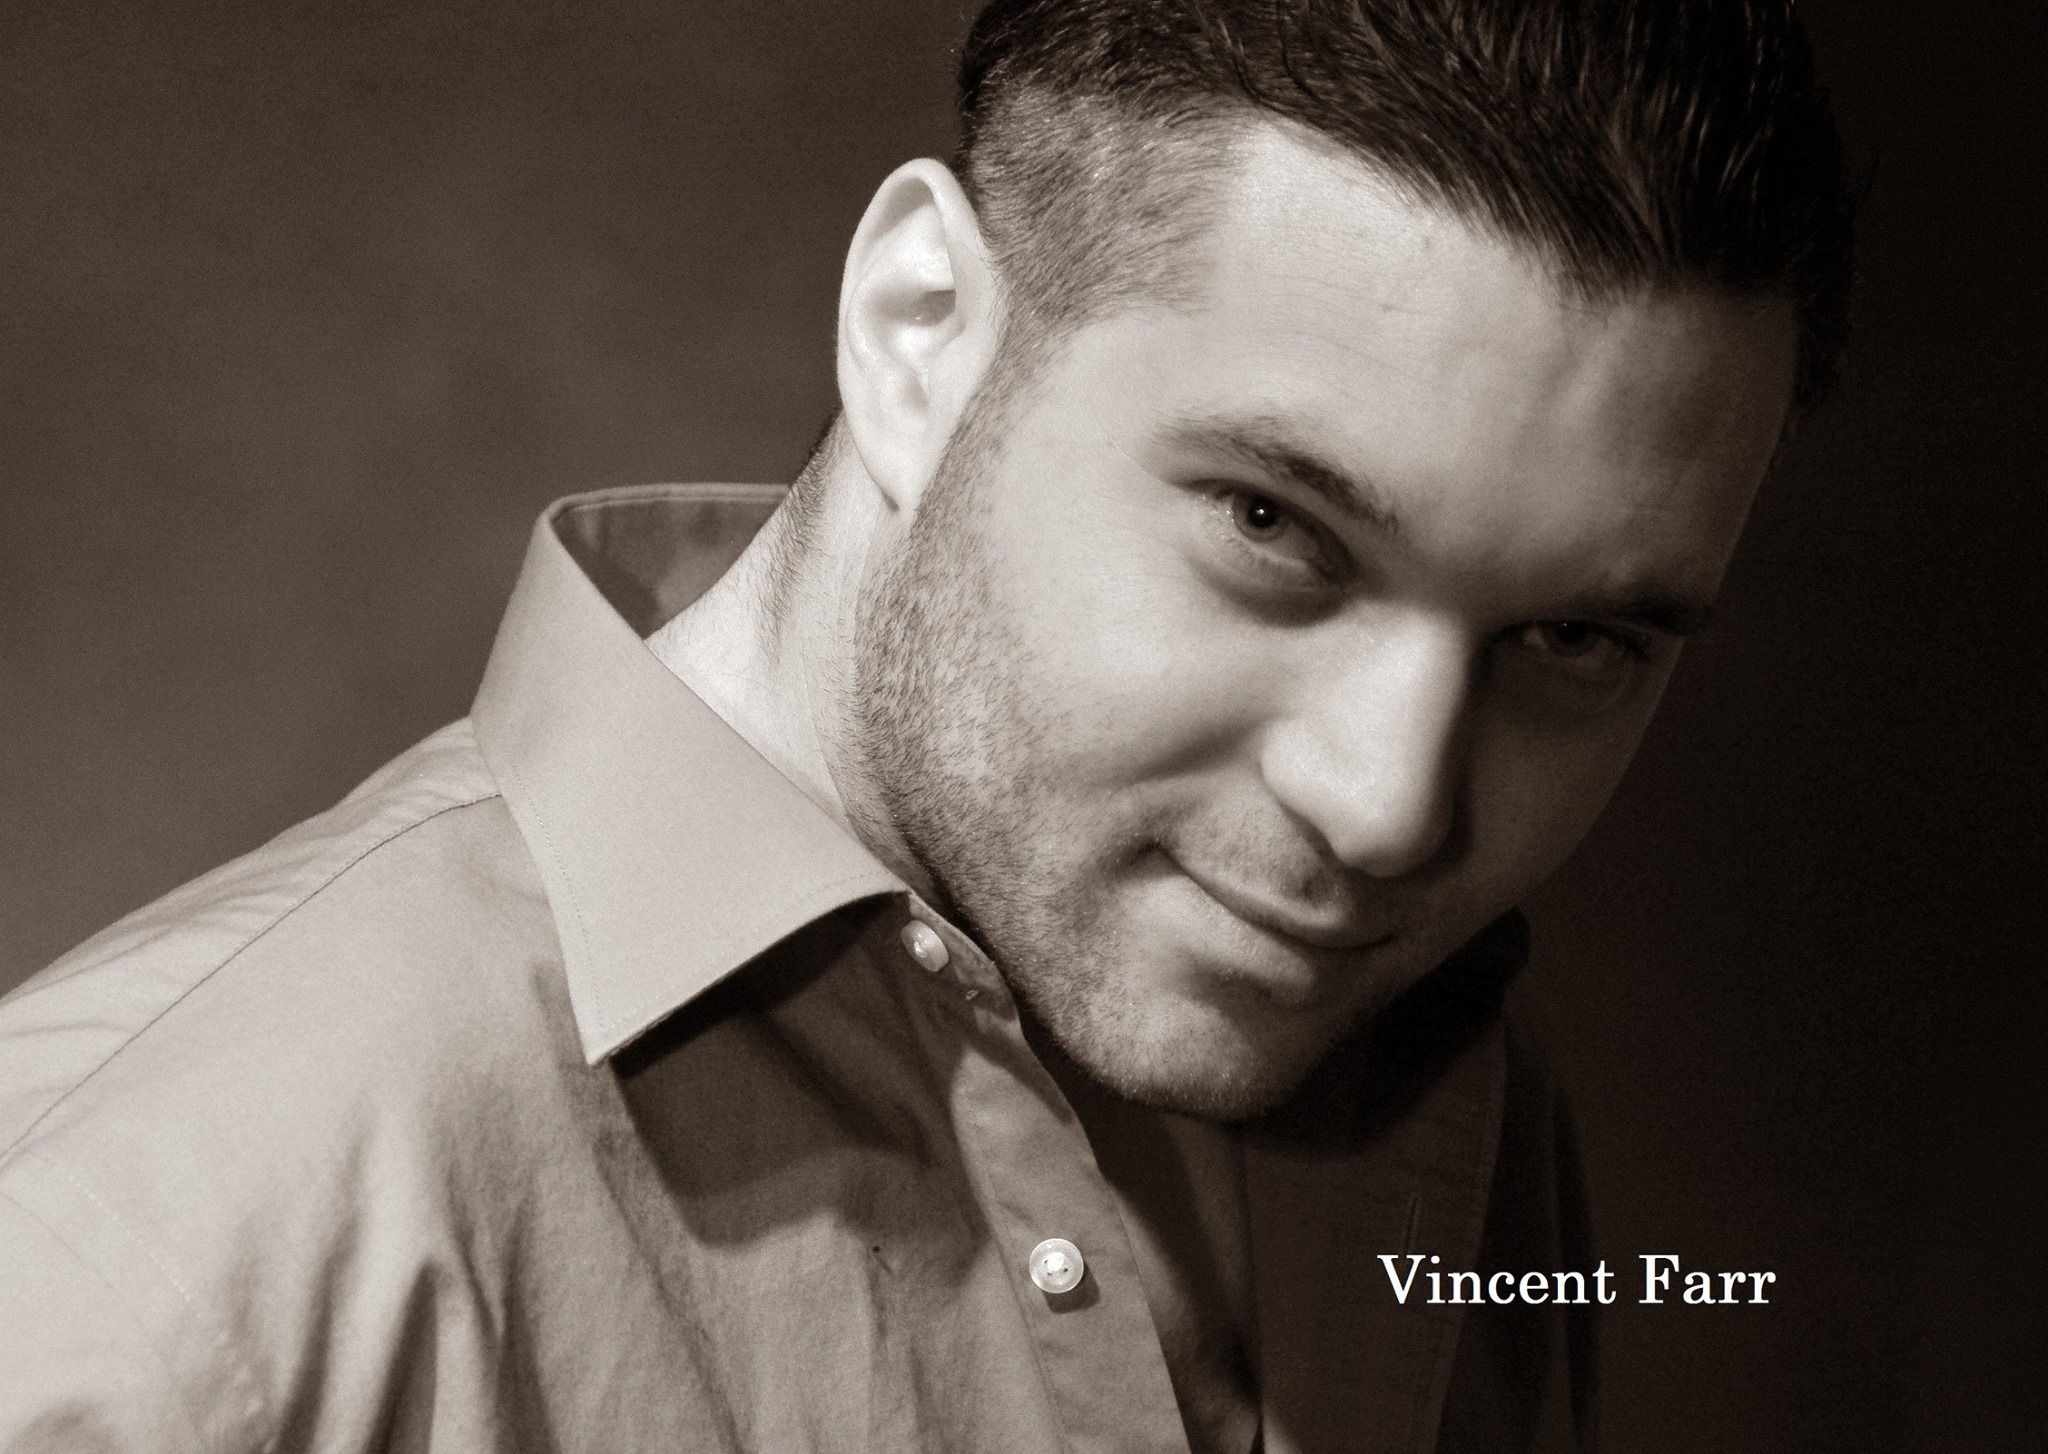 Vincent Farr